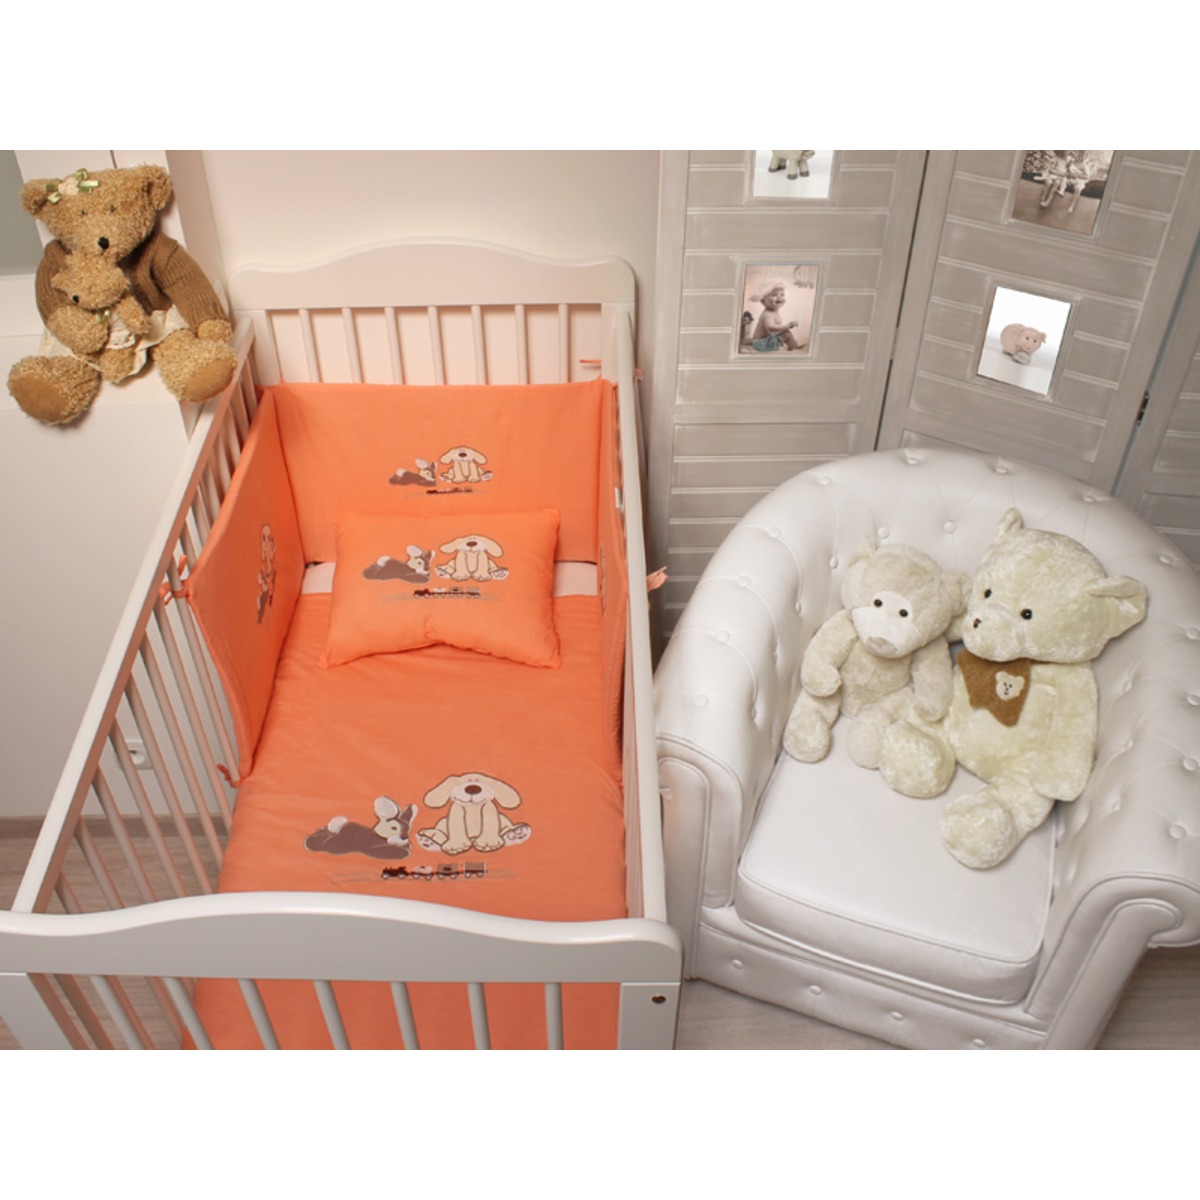 Couette bébé fille petit train + oreiller - Couette 90 x 110 cm - Oreiller 35 x 45 cm - Orange corail